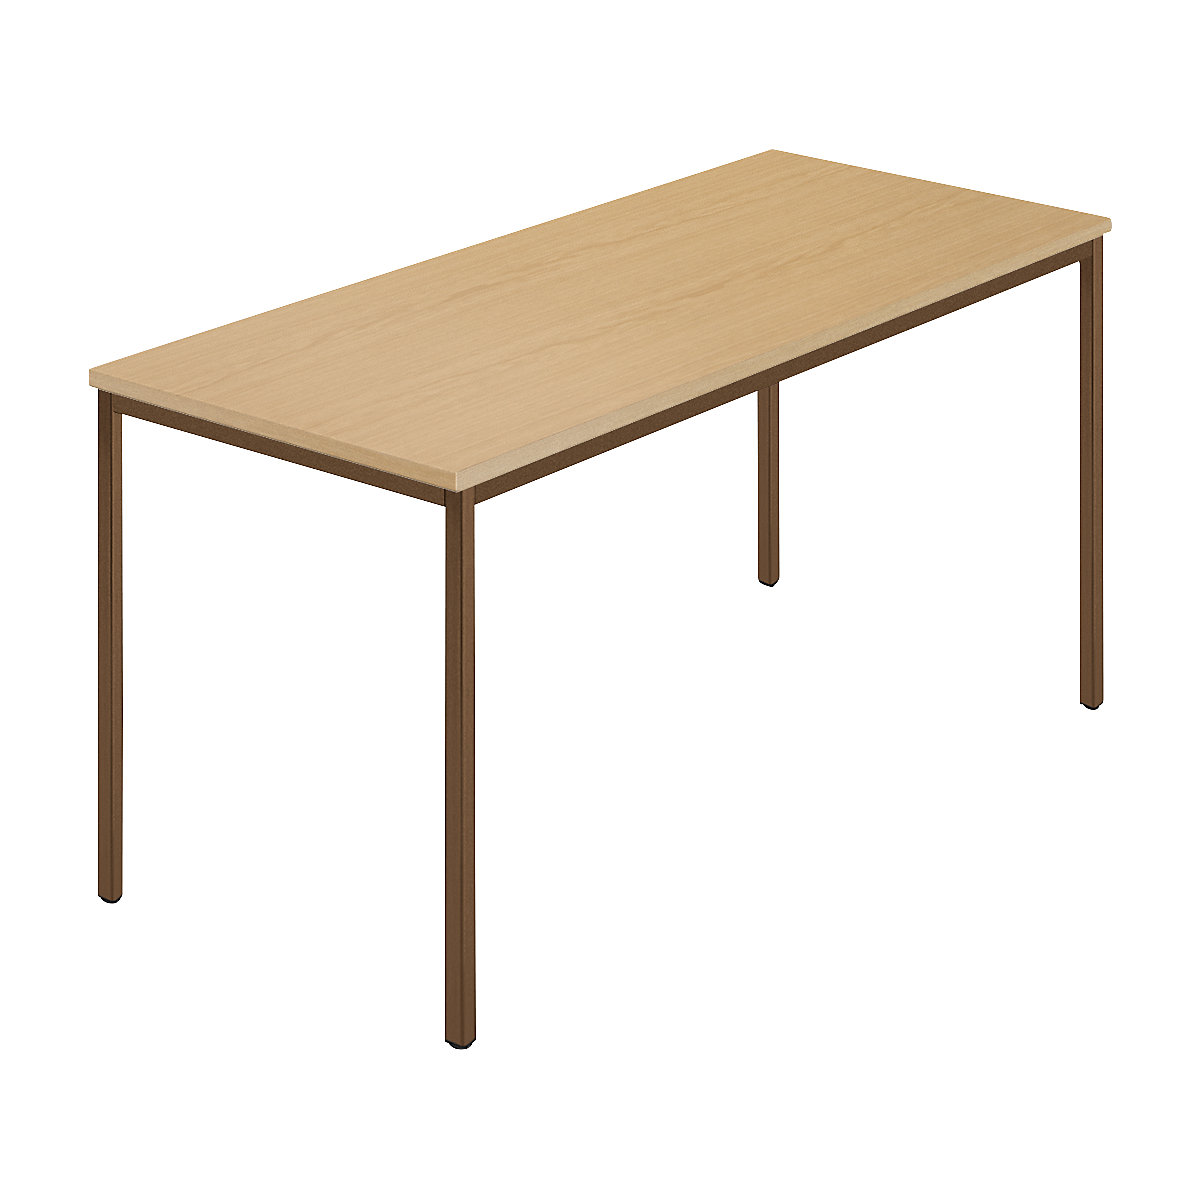 Table rectangulaire, tube carré plastifié, l x p 1400 x 700 mm, hêtre naturel / brun-5